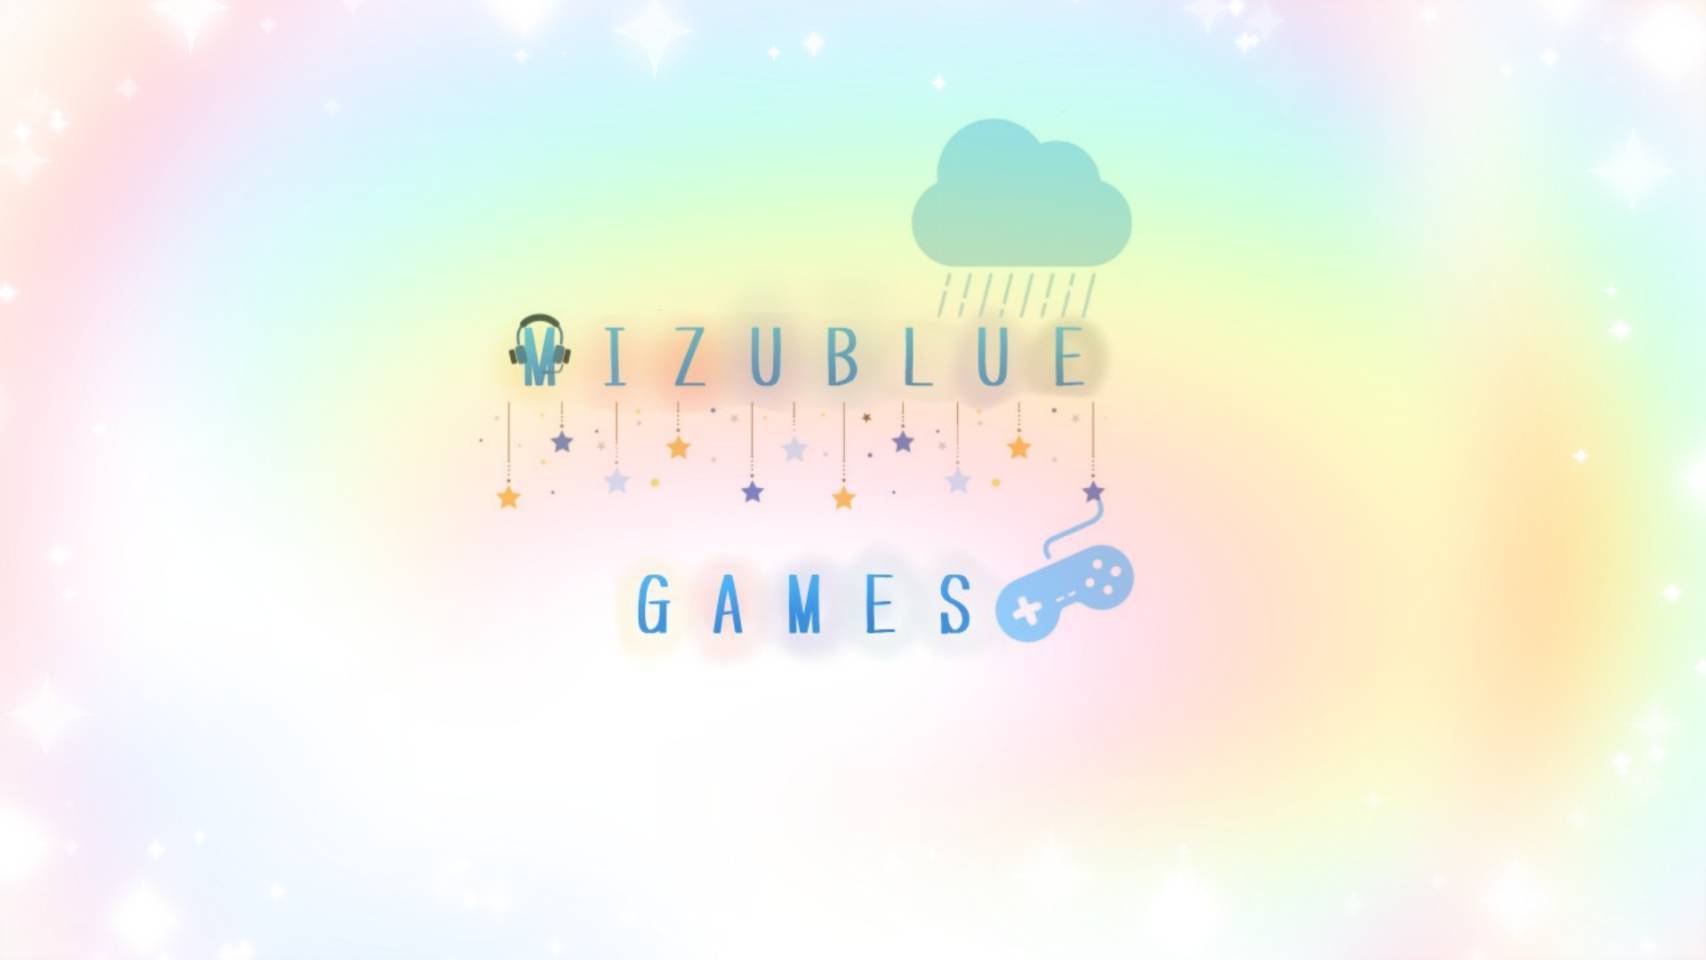 MIZUBLUE GAMES online shop